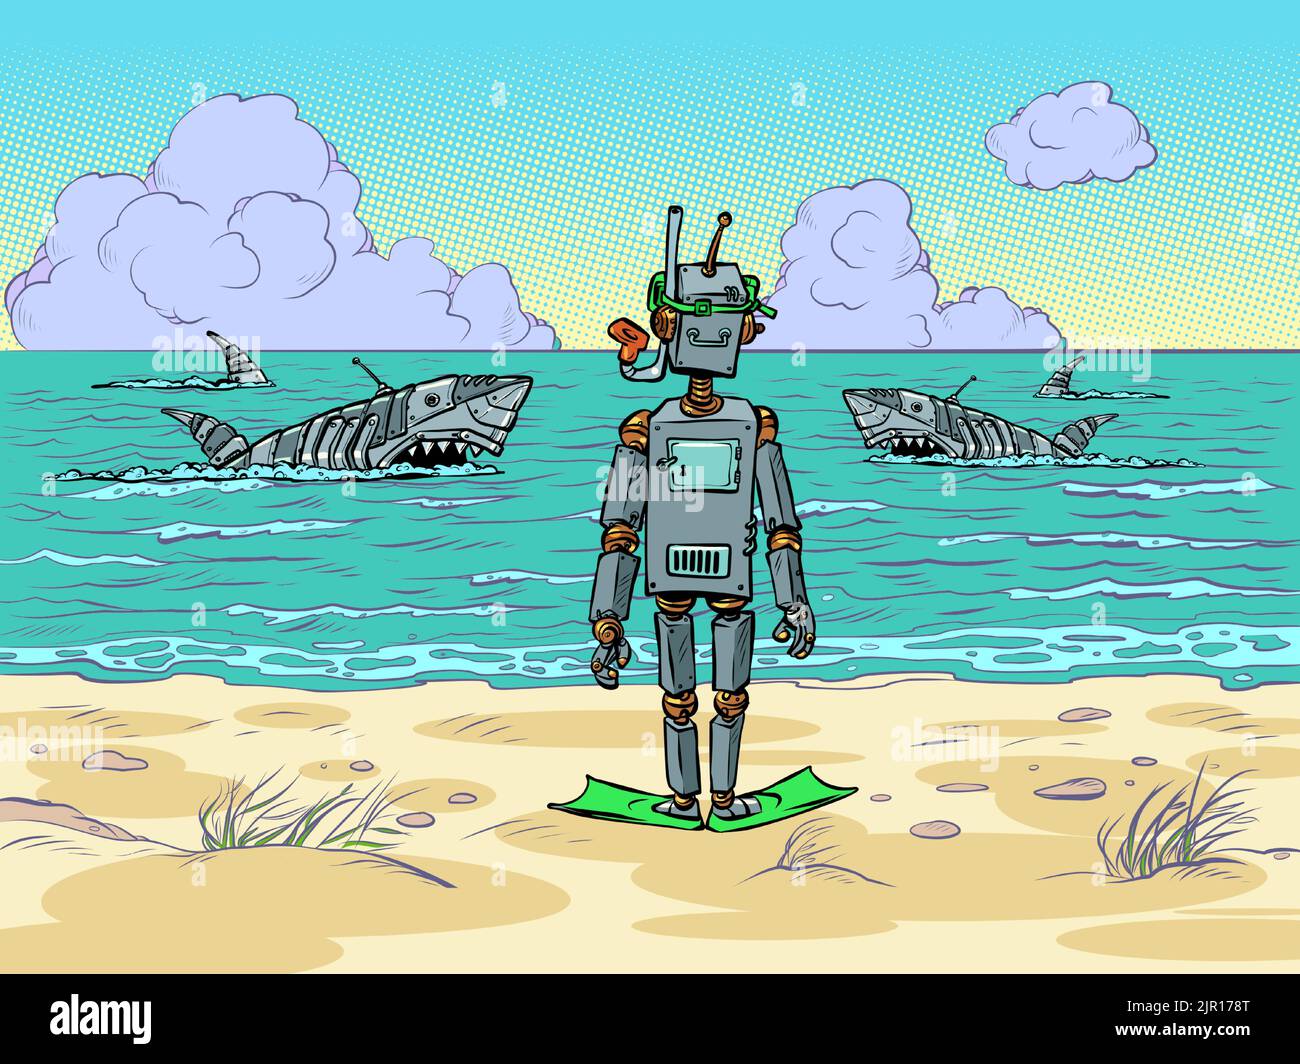 Robot tourist on the seashore. Mechanical dangerous sharks swim in the ocean Stock Vector